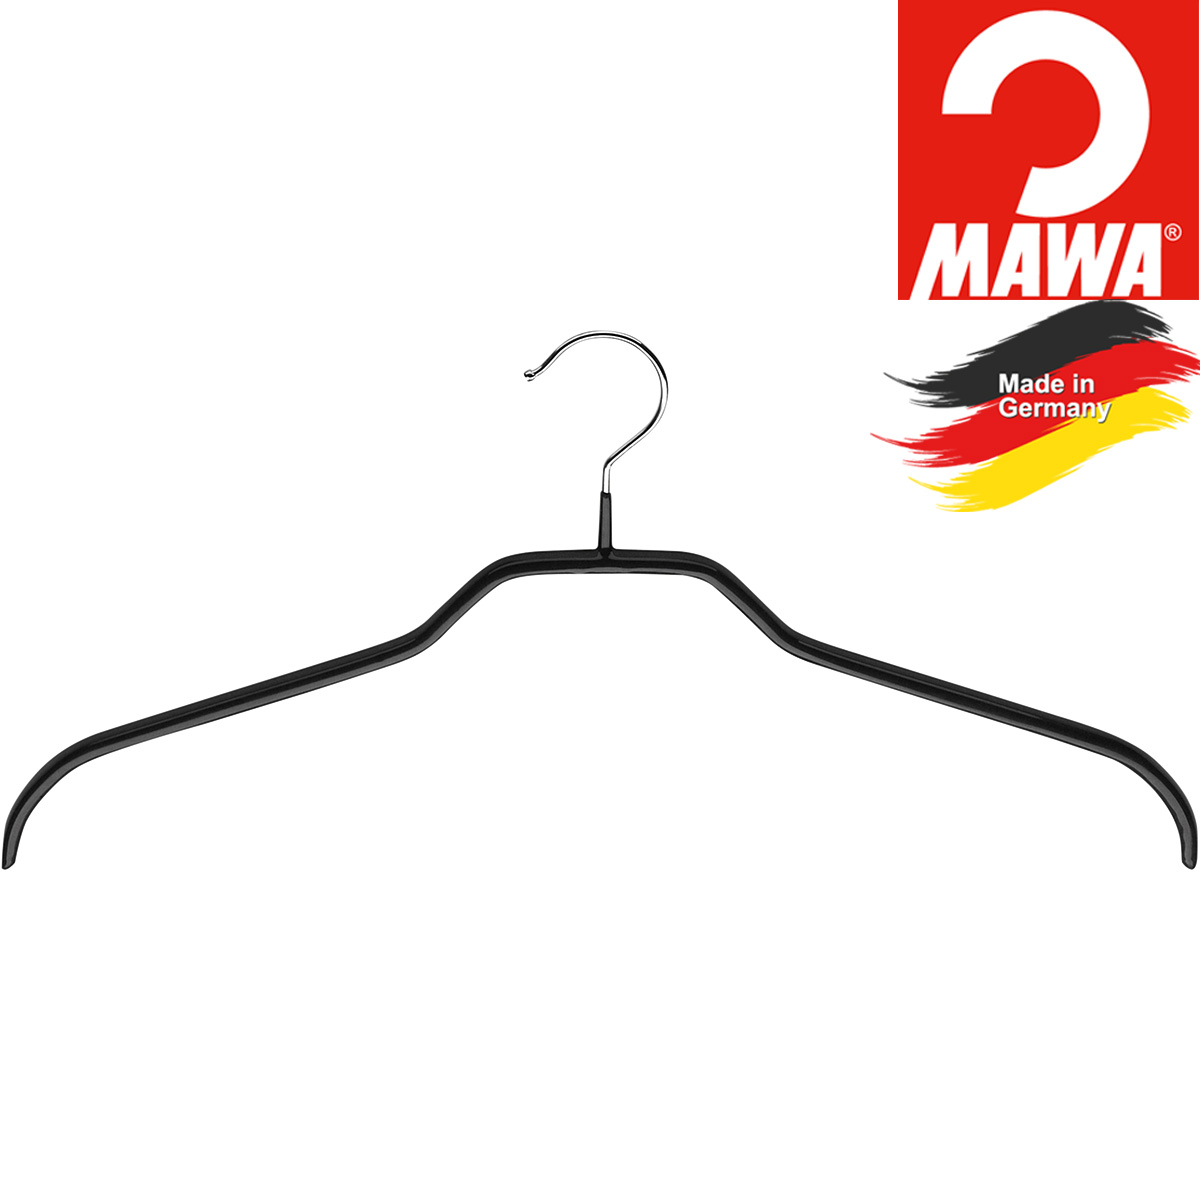 MAWA Hemden Kleiderbügel